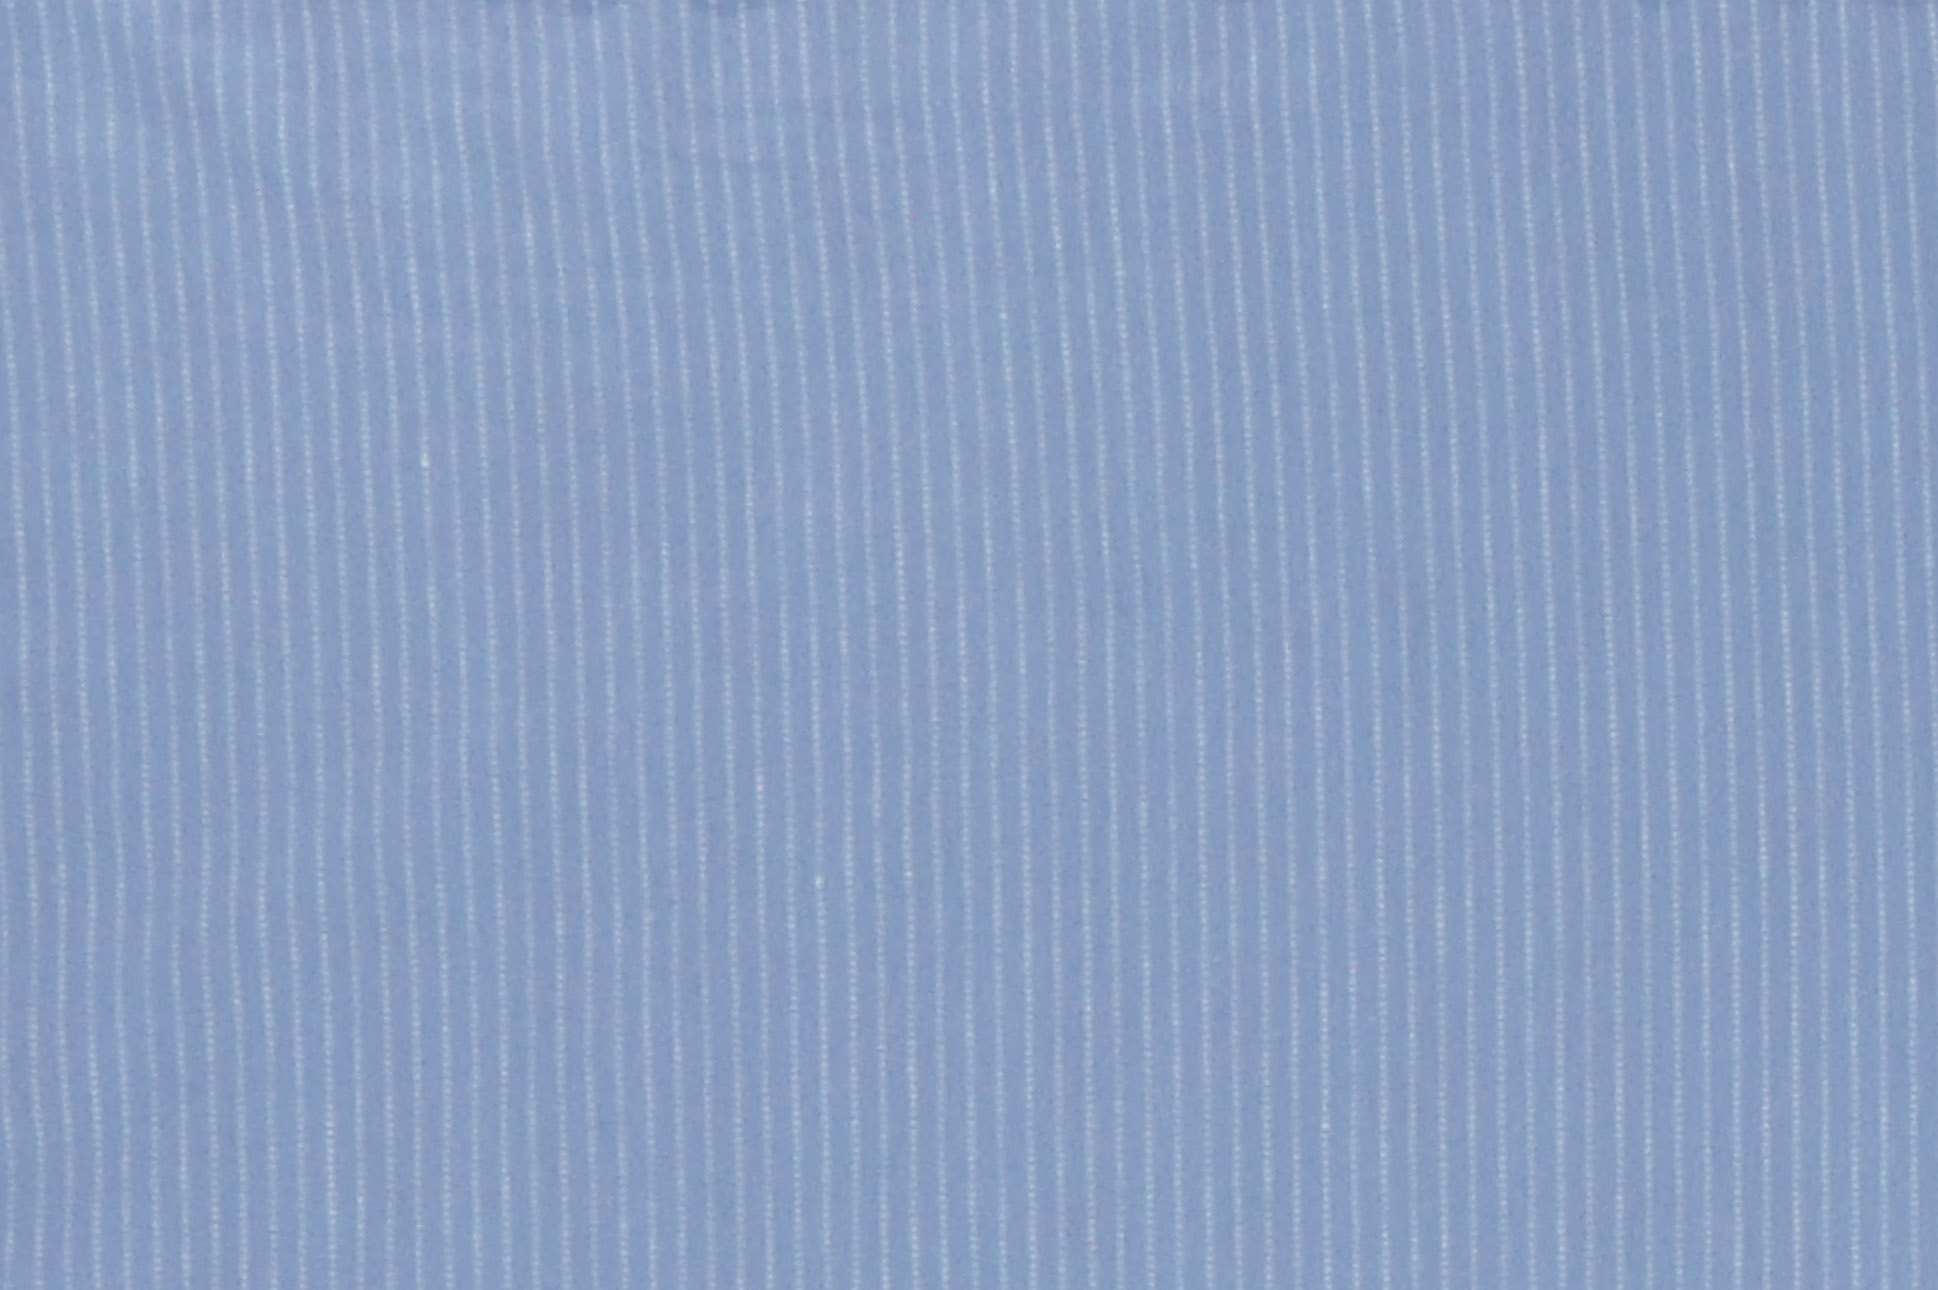 Jersey di cotone, strisce tratteggiate su fondo azzurro antico